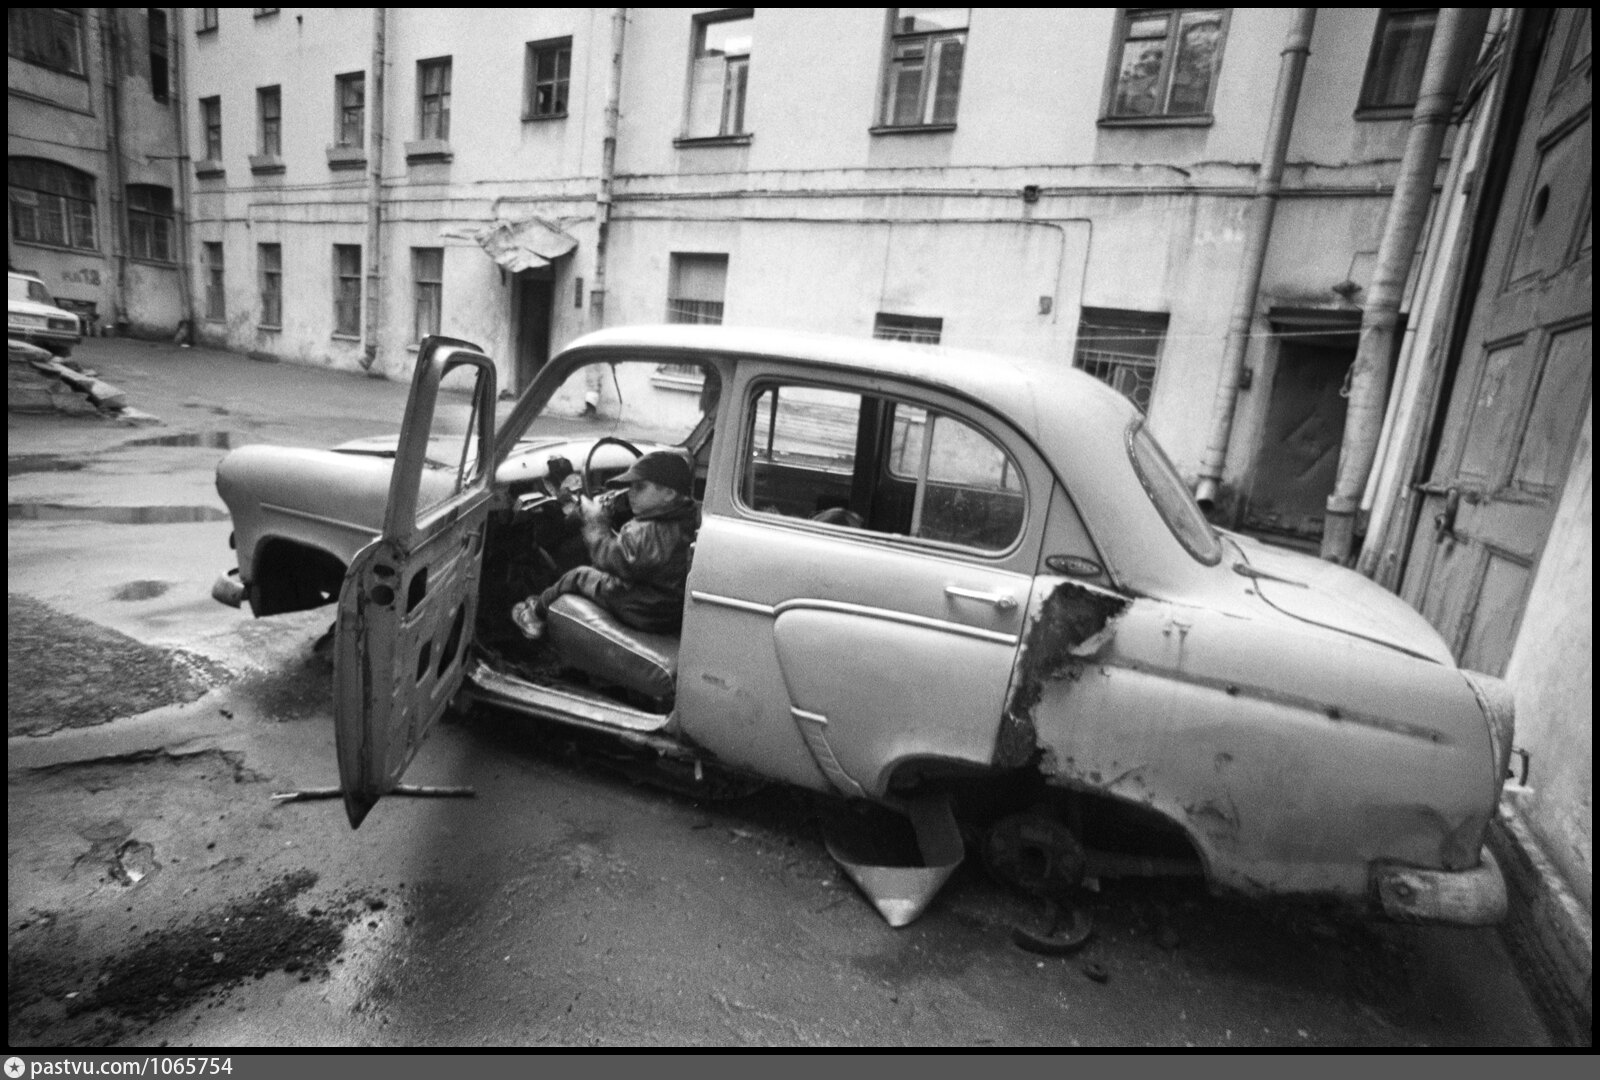 Улицы разбитых машин. Разбитый автомобиль. Ленинград дворы.